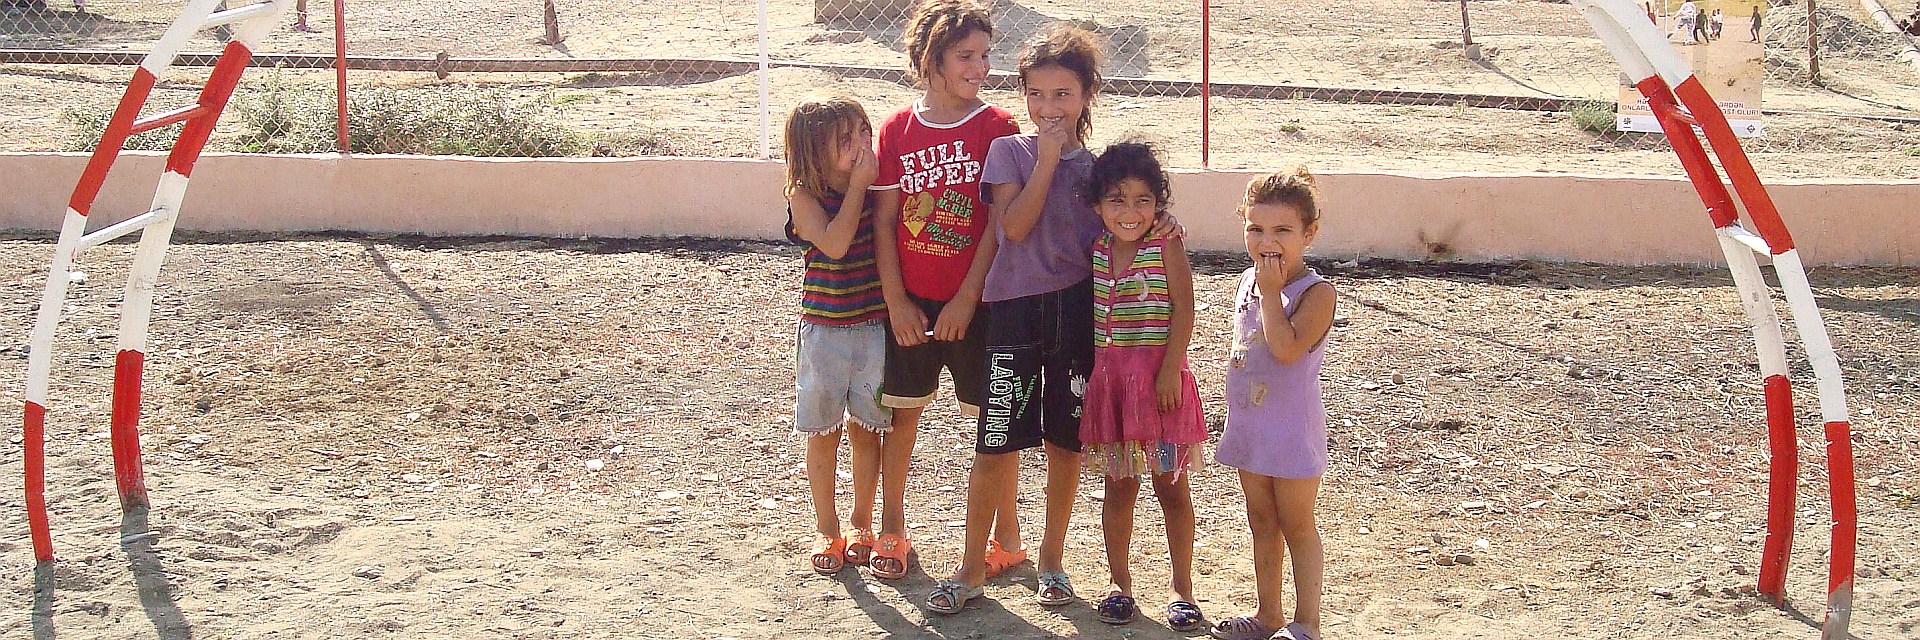 Aserbaidschan: Sichere Kinderspielplätze ohne Minengefahr